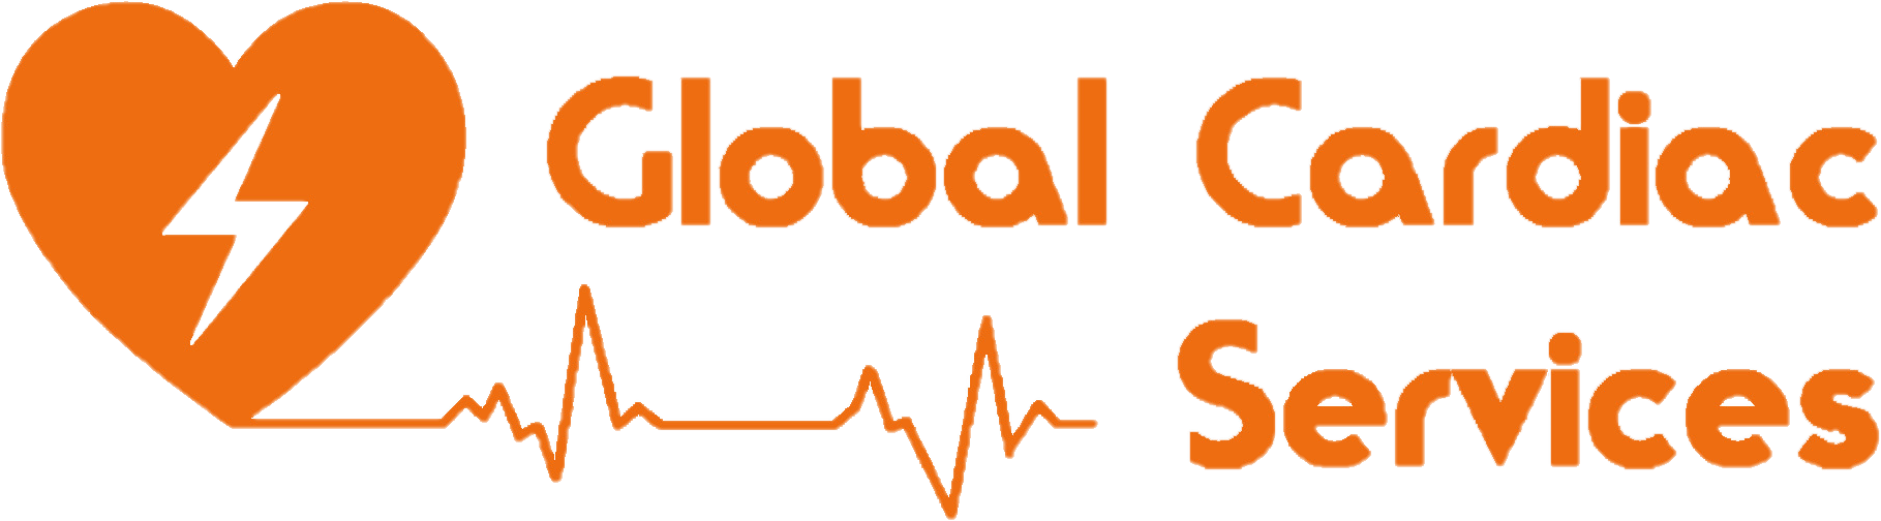 Global Cardiac Services